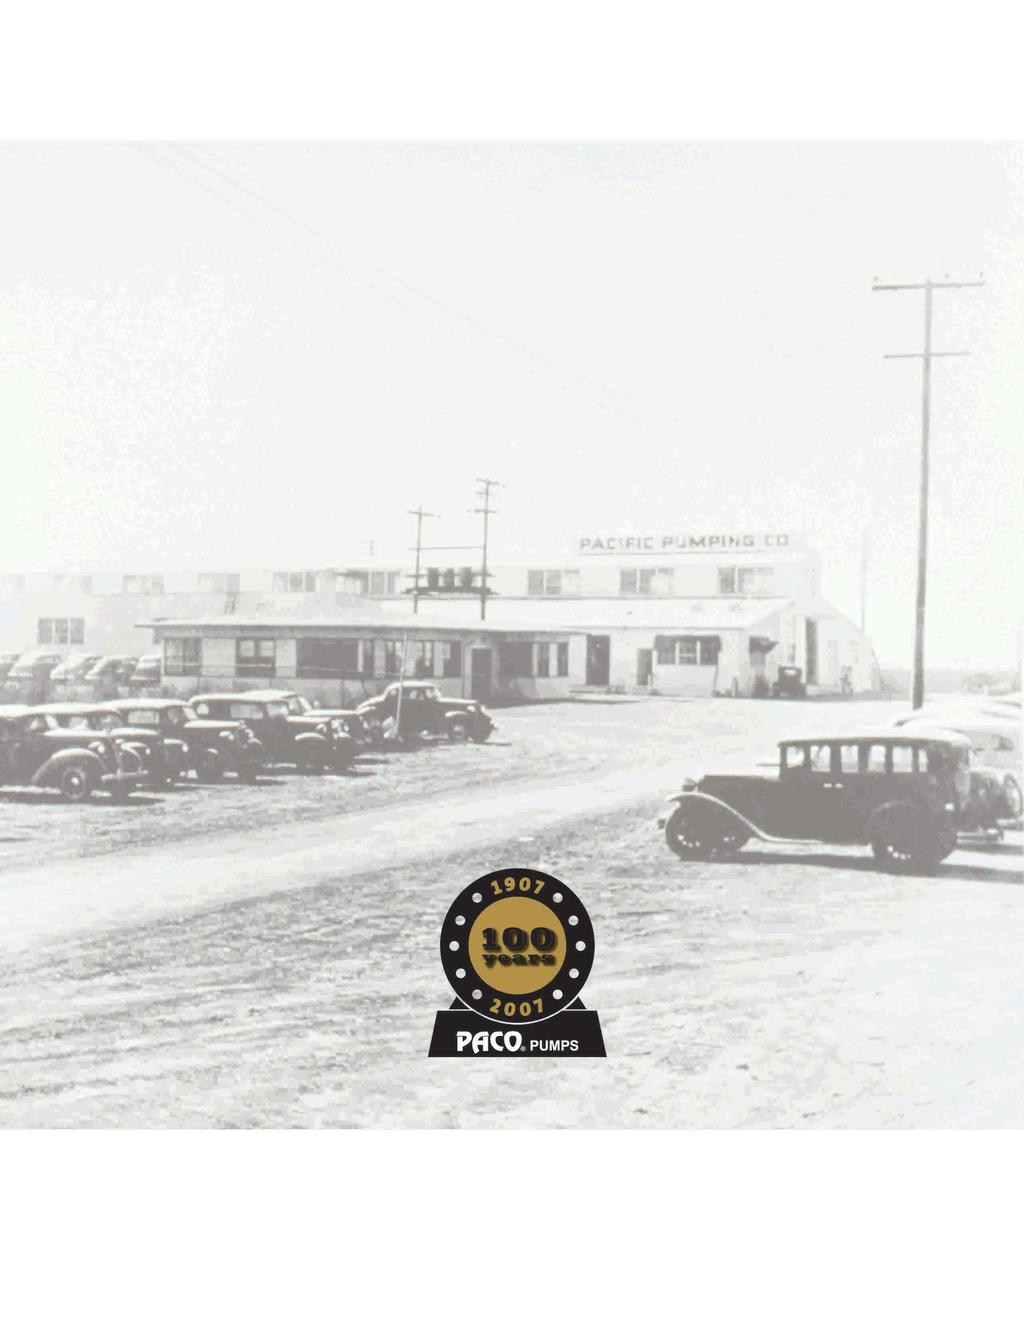 PACO Pumps, originalmente conocida como Pacific Pumping Company, se fundó en San Francisco en 1907 y hoy en día su oficina central se ubica en Brookshire, Texas.